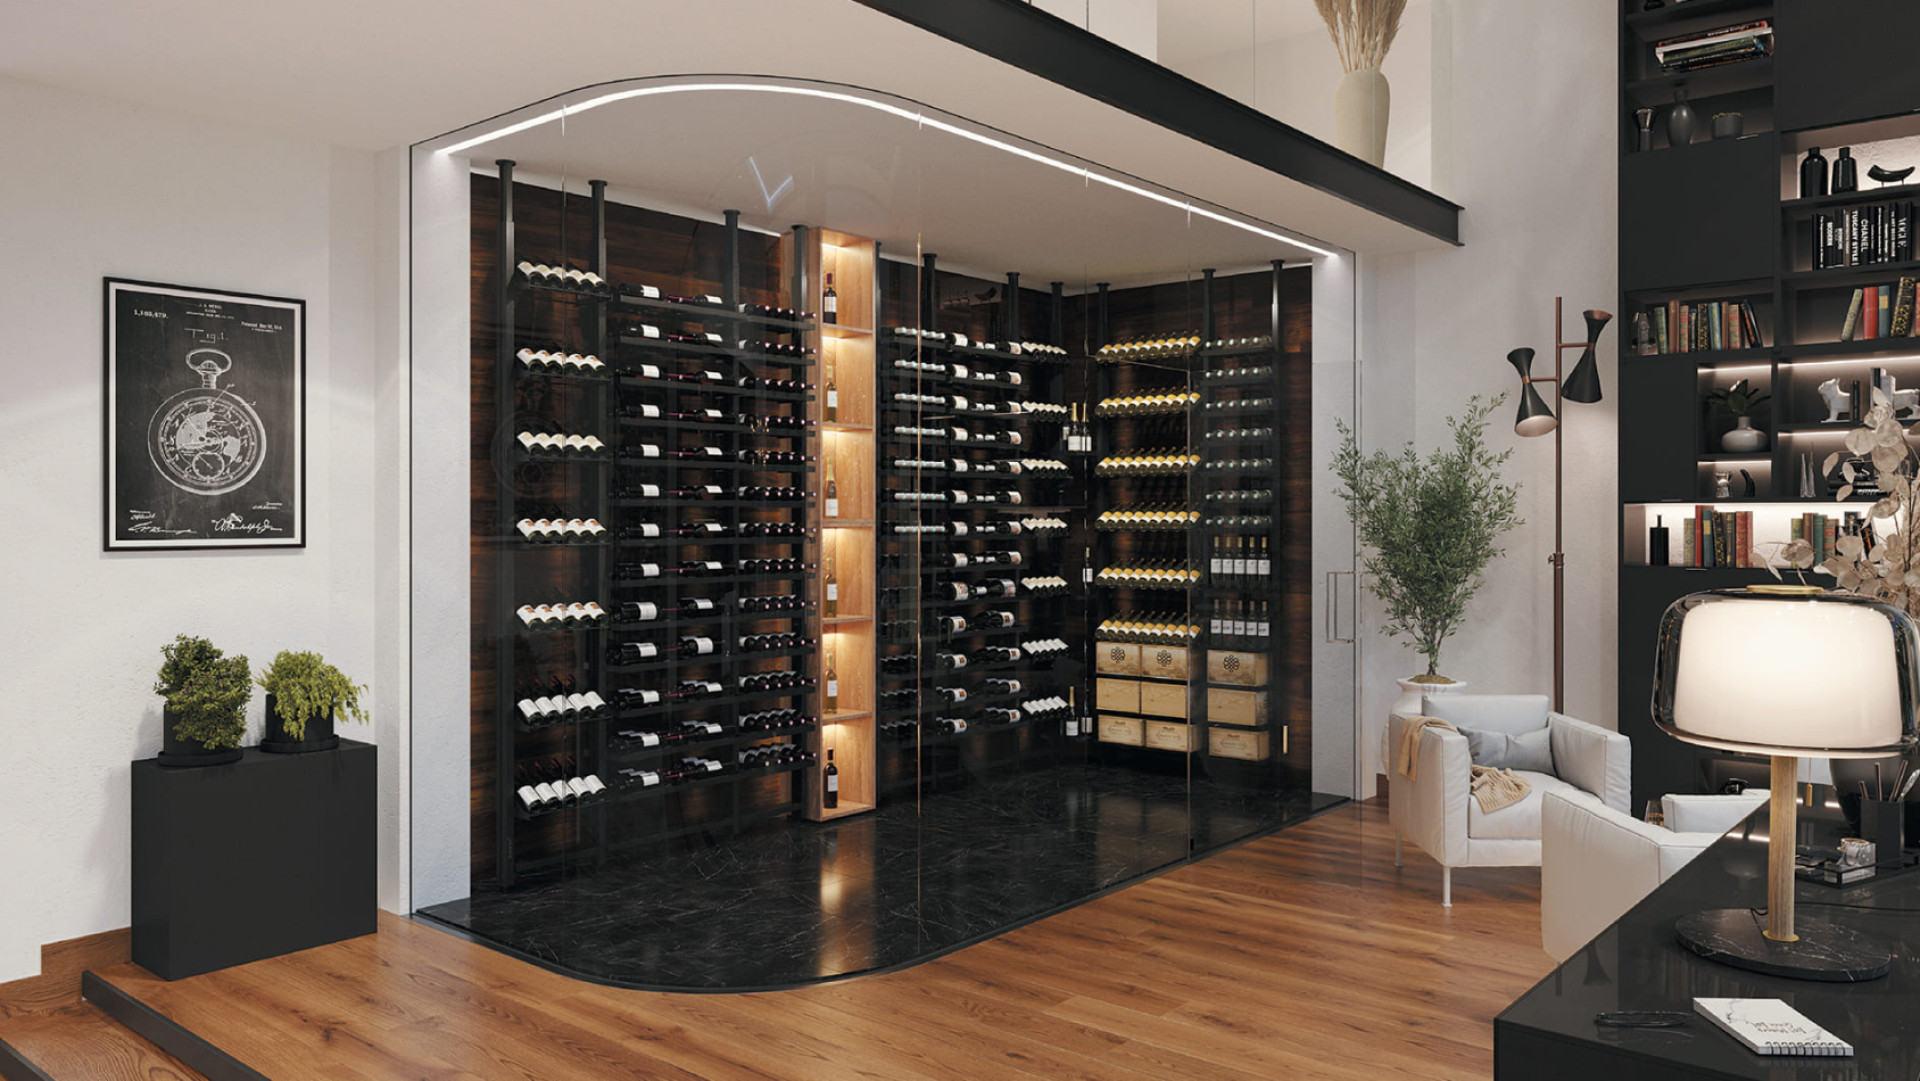 Créez la cave à vin de vos rêves en aménagant un espace vin vitré dans votre salon avec des rangements modernes en métal spécialement étudiés pour le vin.